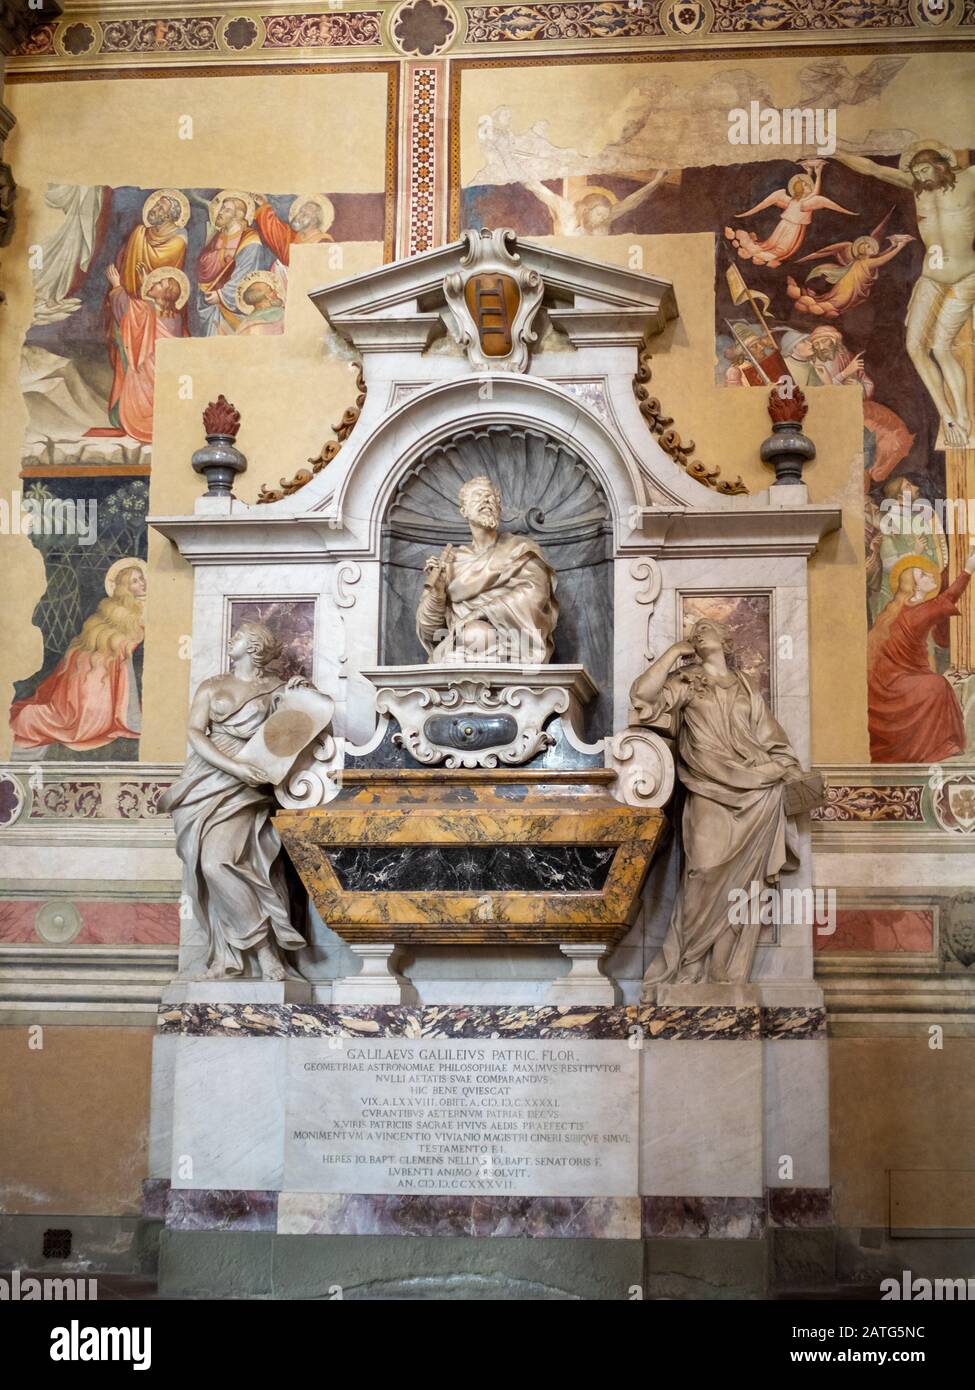 Galileu Galilei tomb inside Basilica di Santa Croce in Florence Stock Photo